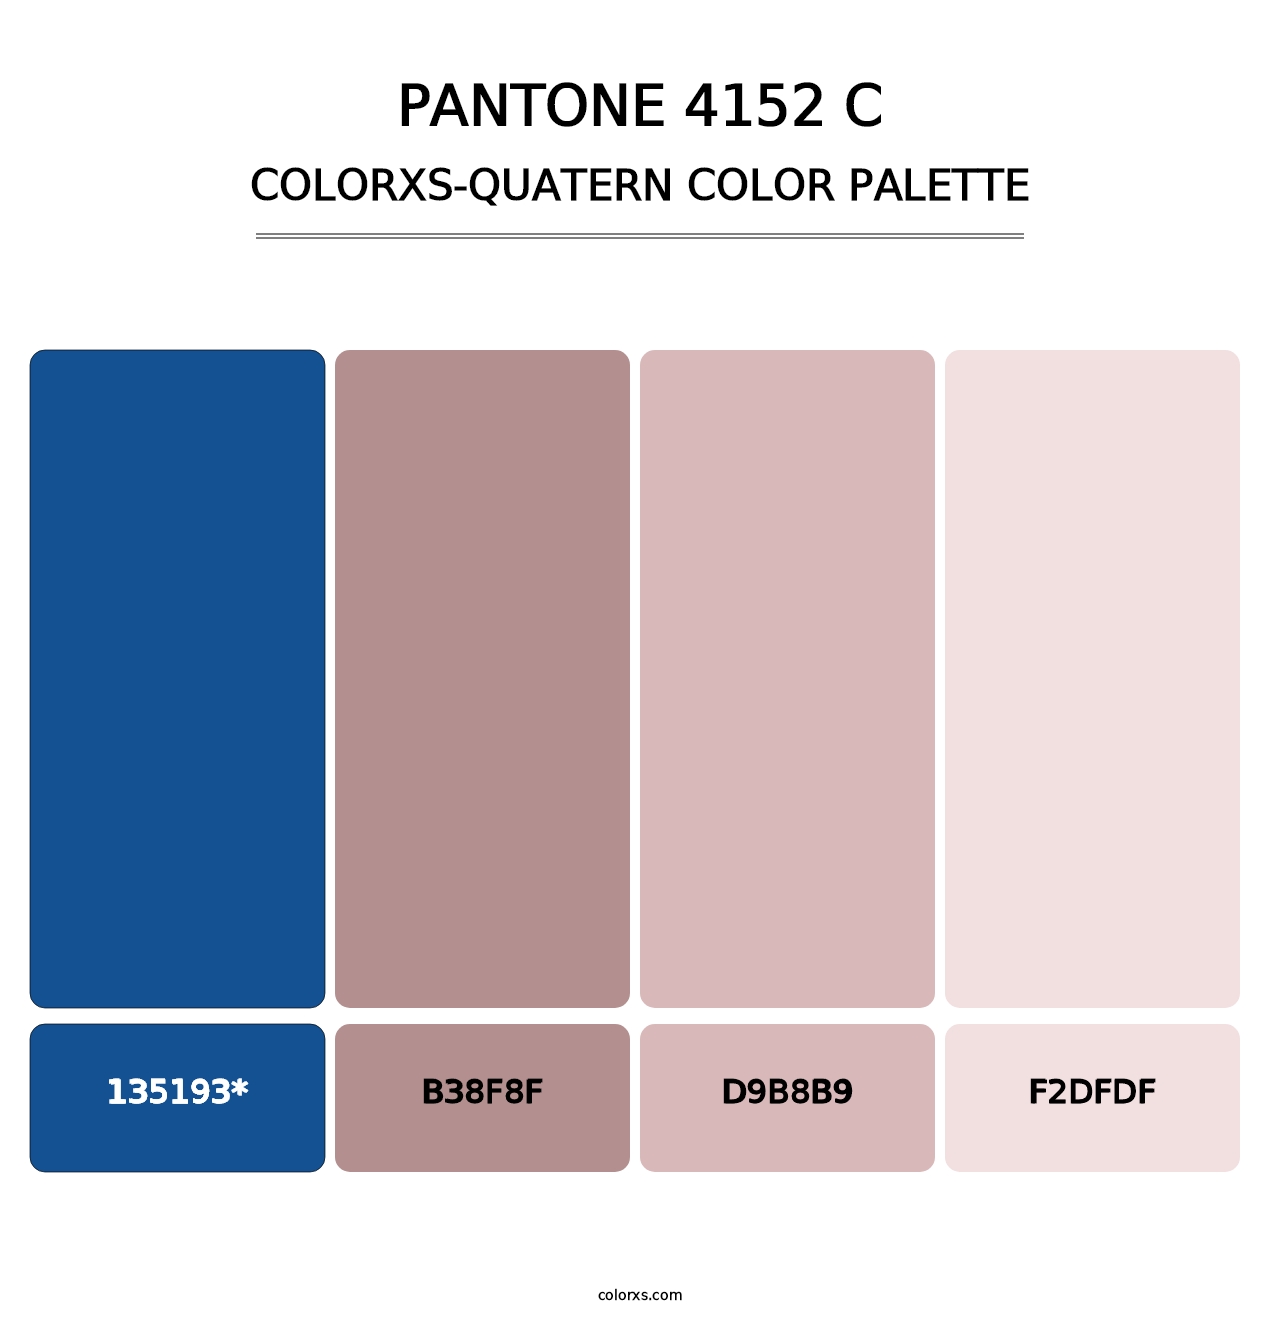 PANTONE 4152 C - Colorxs Quatern Palette